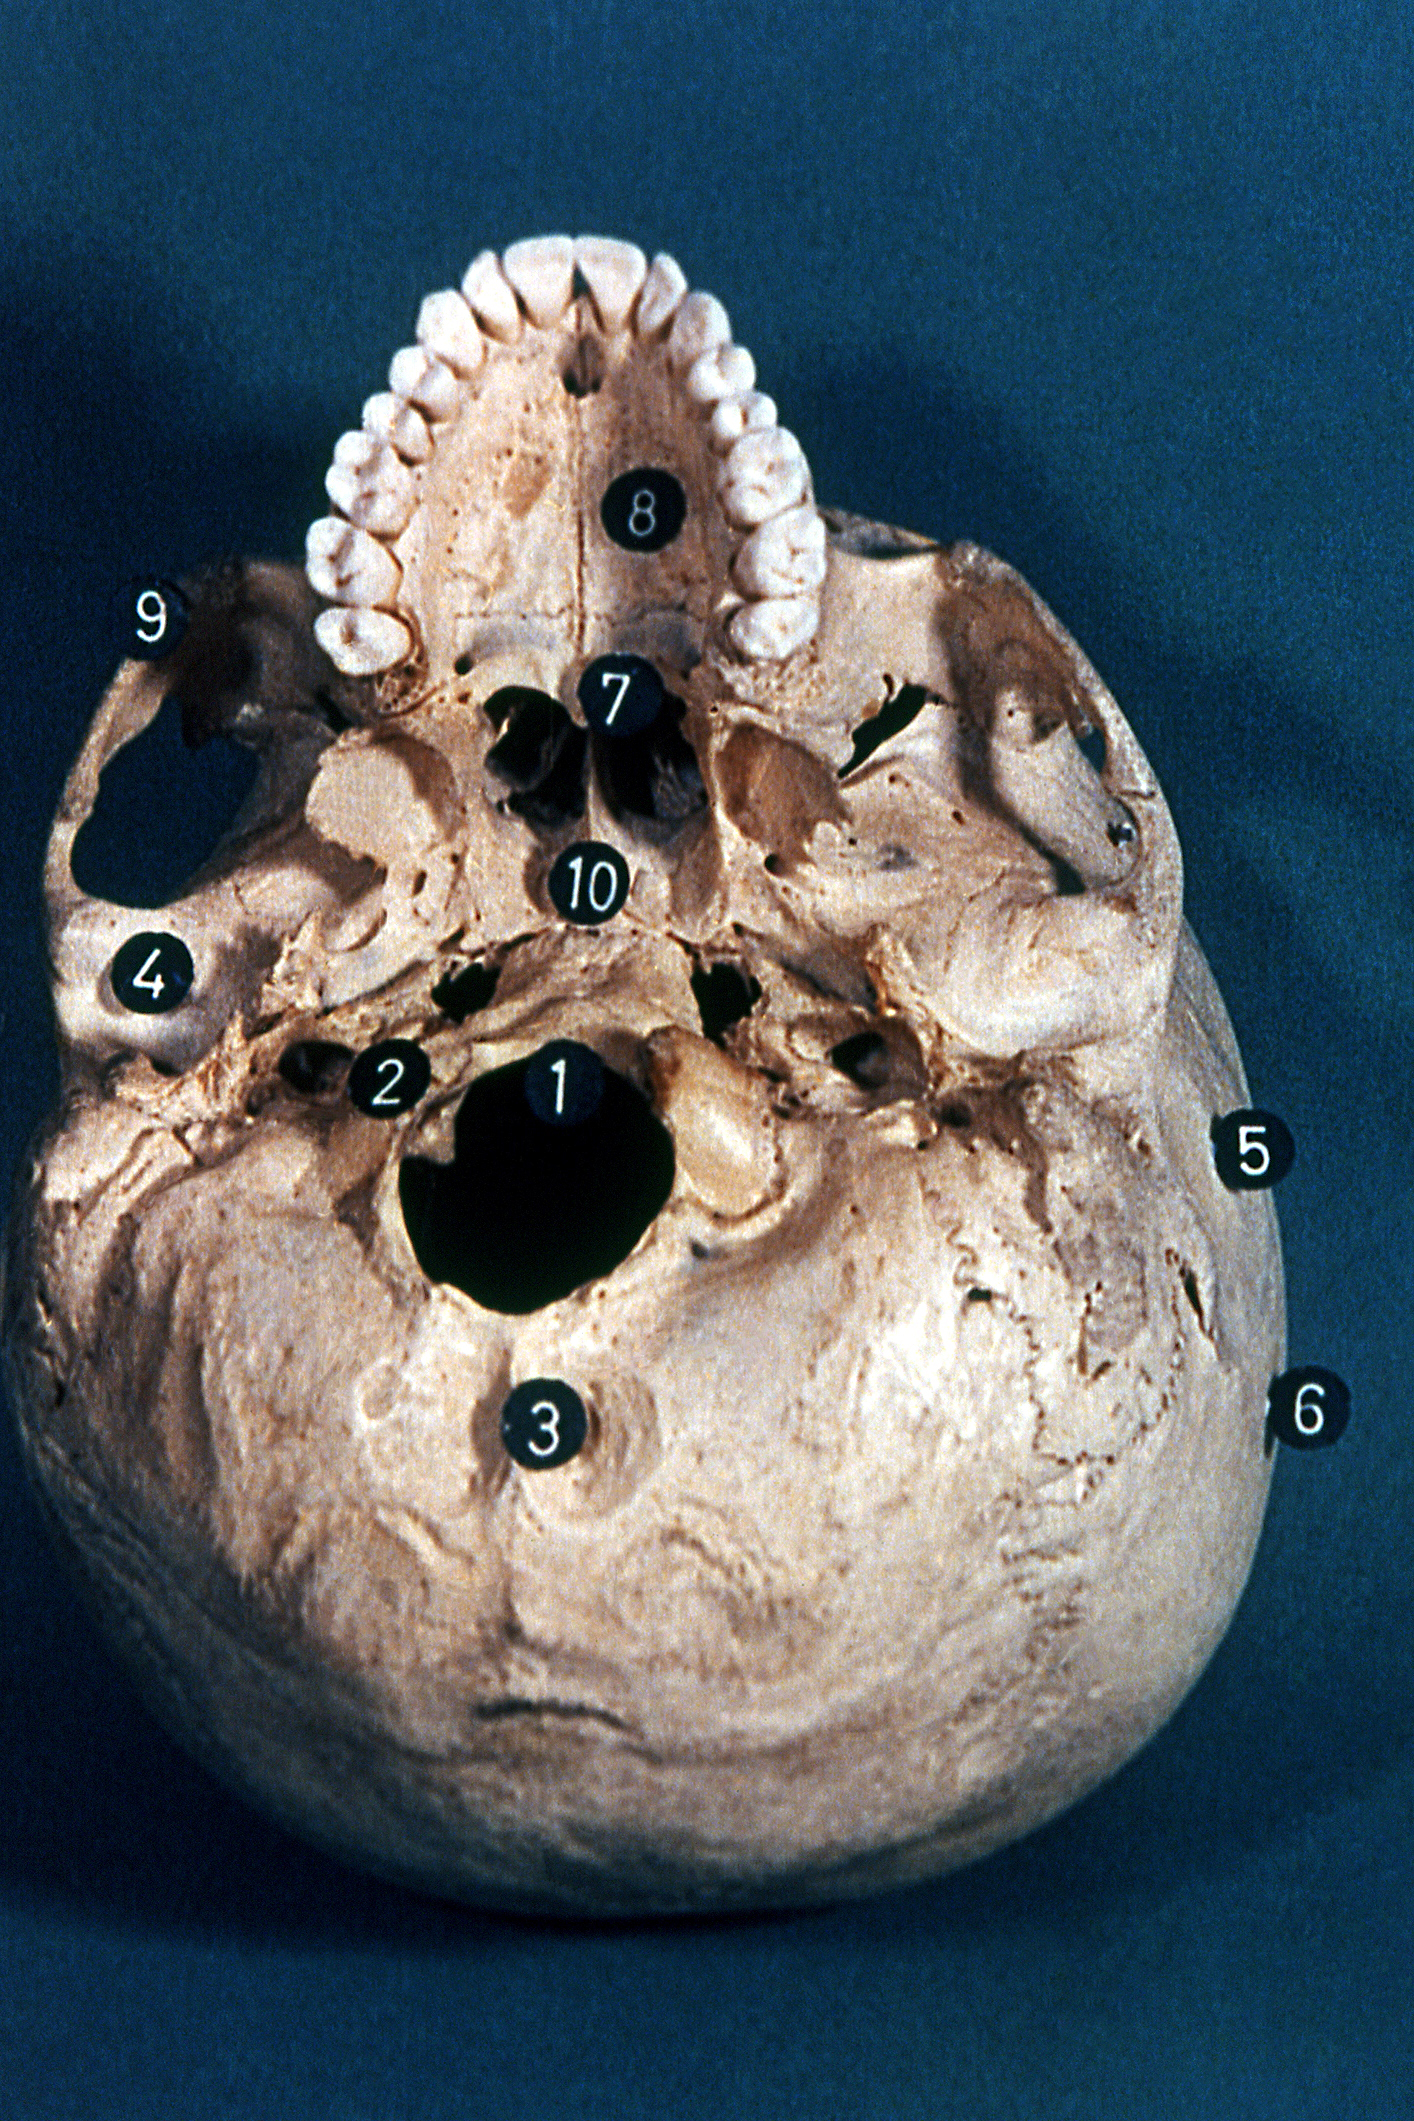 Visión inferior de la cara externa del cráneo